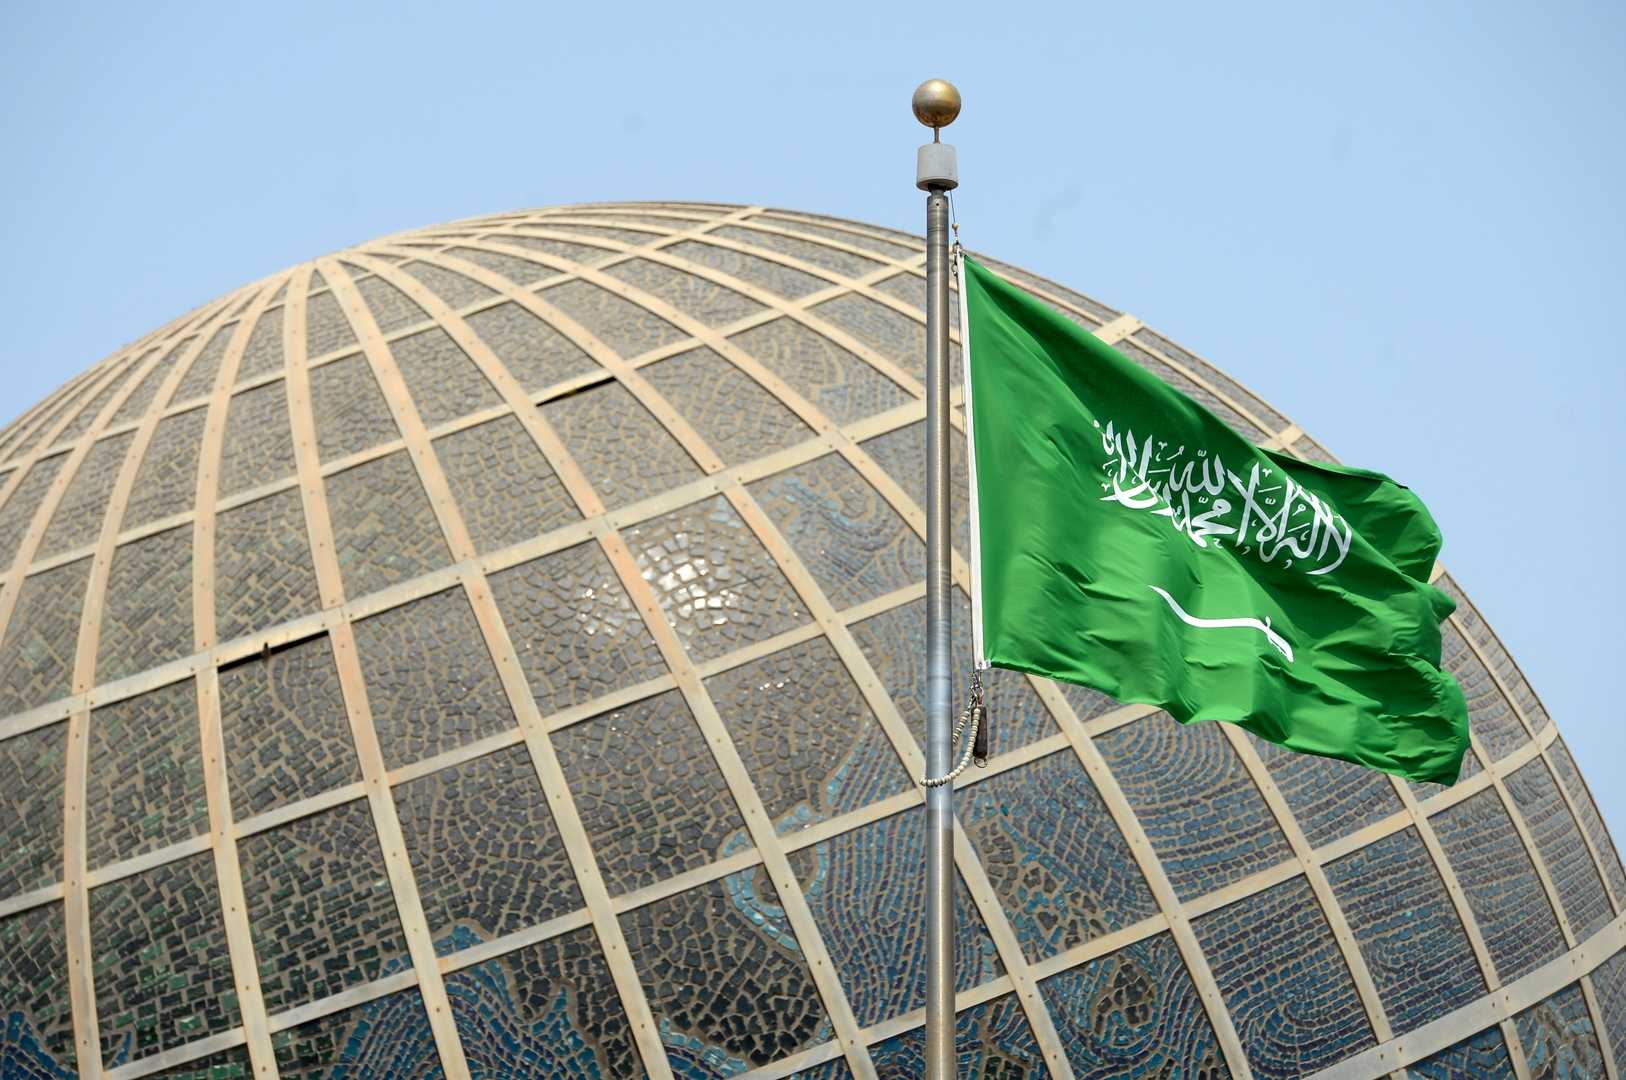 السعودية..الداخلية تصدر بيانا بشأن إعدام أجنبي قام بقتل آخر في المنطقة الشرقية